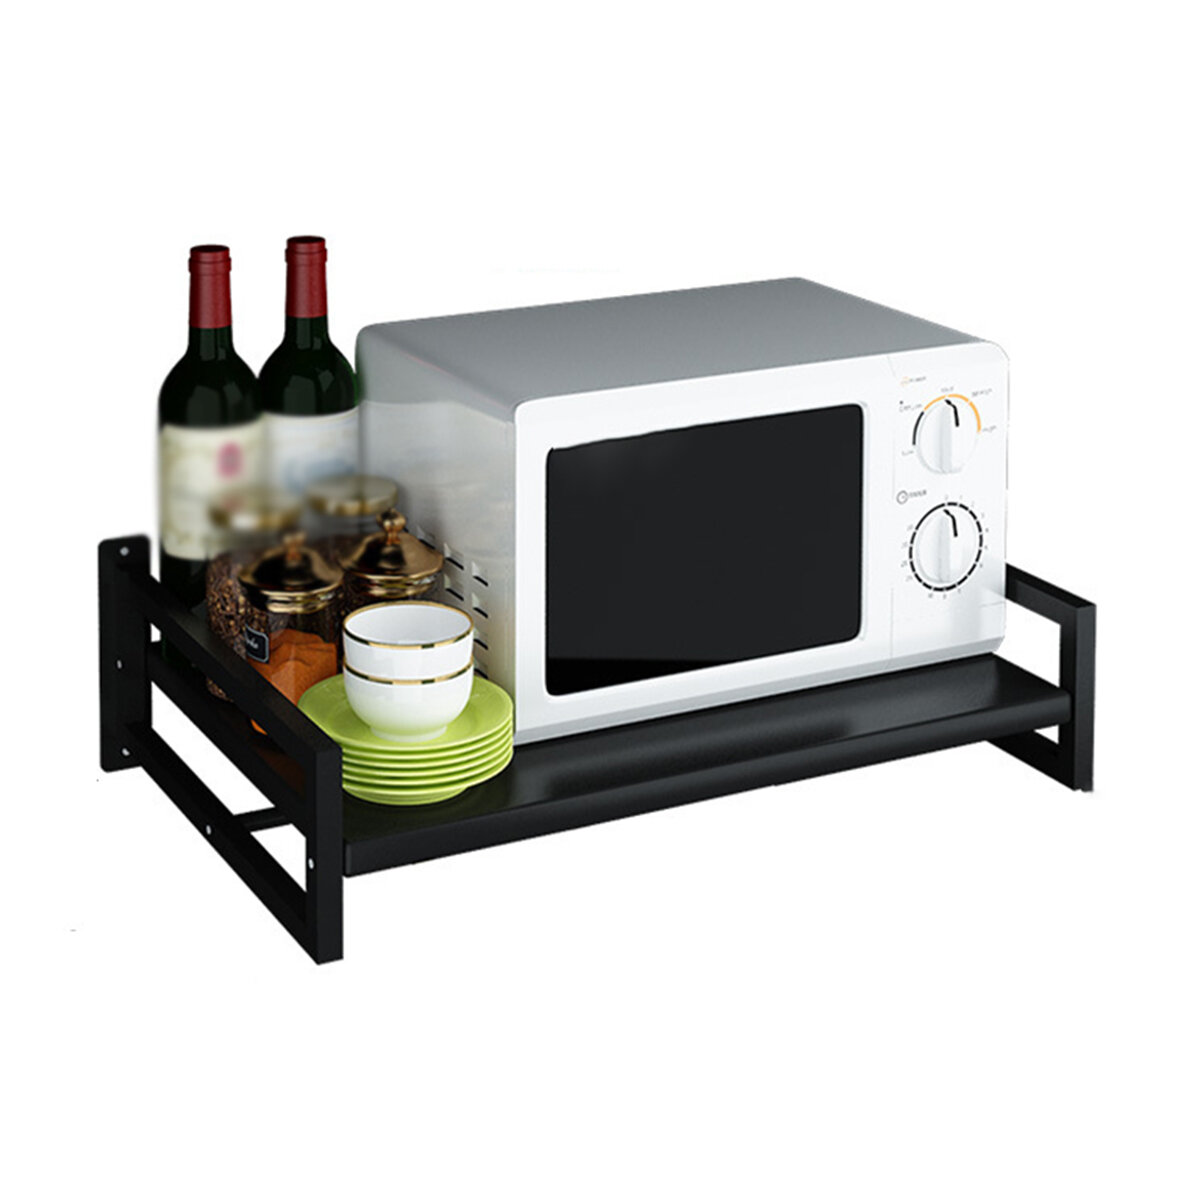 Microwave Oven Stand Storage Rack Kitchen Storage Bracket Shelf Space Saving Kitchen Organizer COD